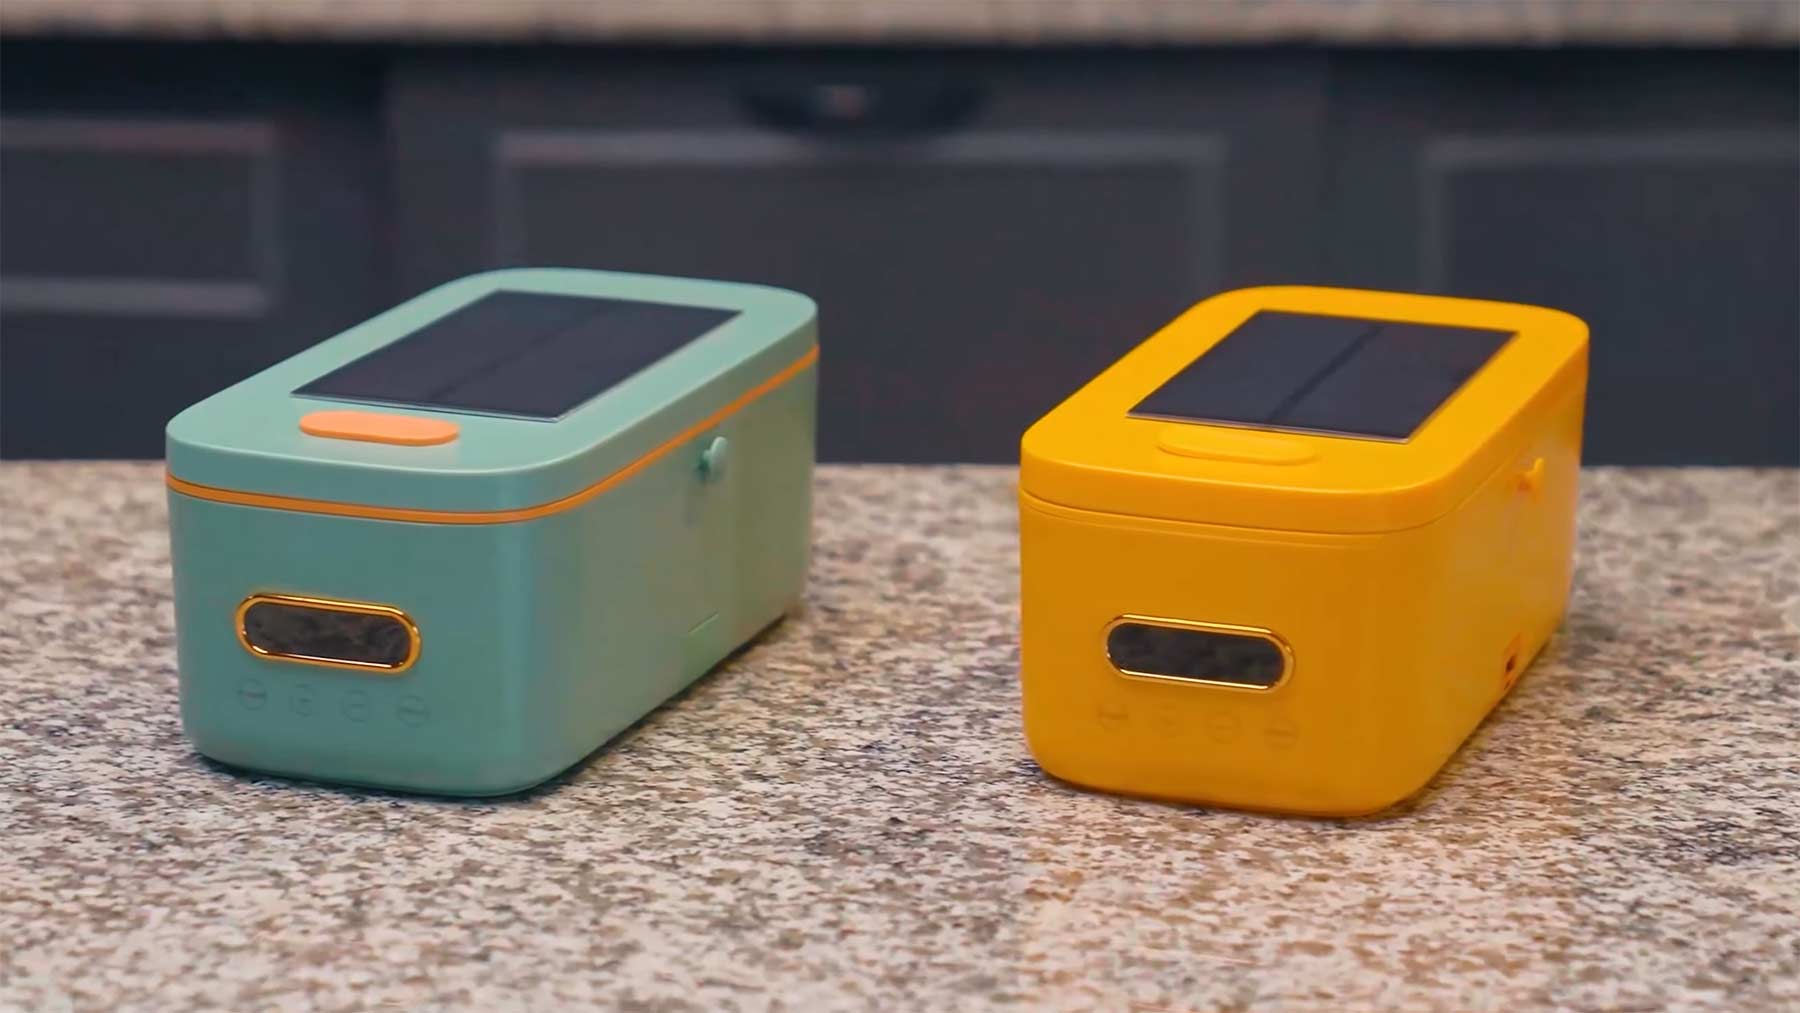 Crowdfunding-Tipp: Solarbetriebene Kühl- und Wärme-Lunchbox "SunnySide" Sunnyside-solarbetriebene-lunchbox 